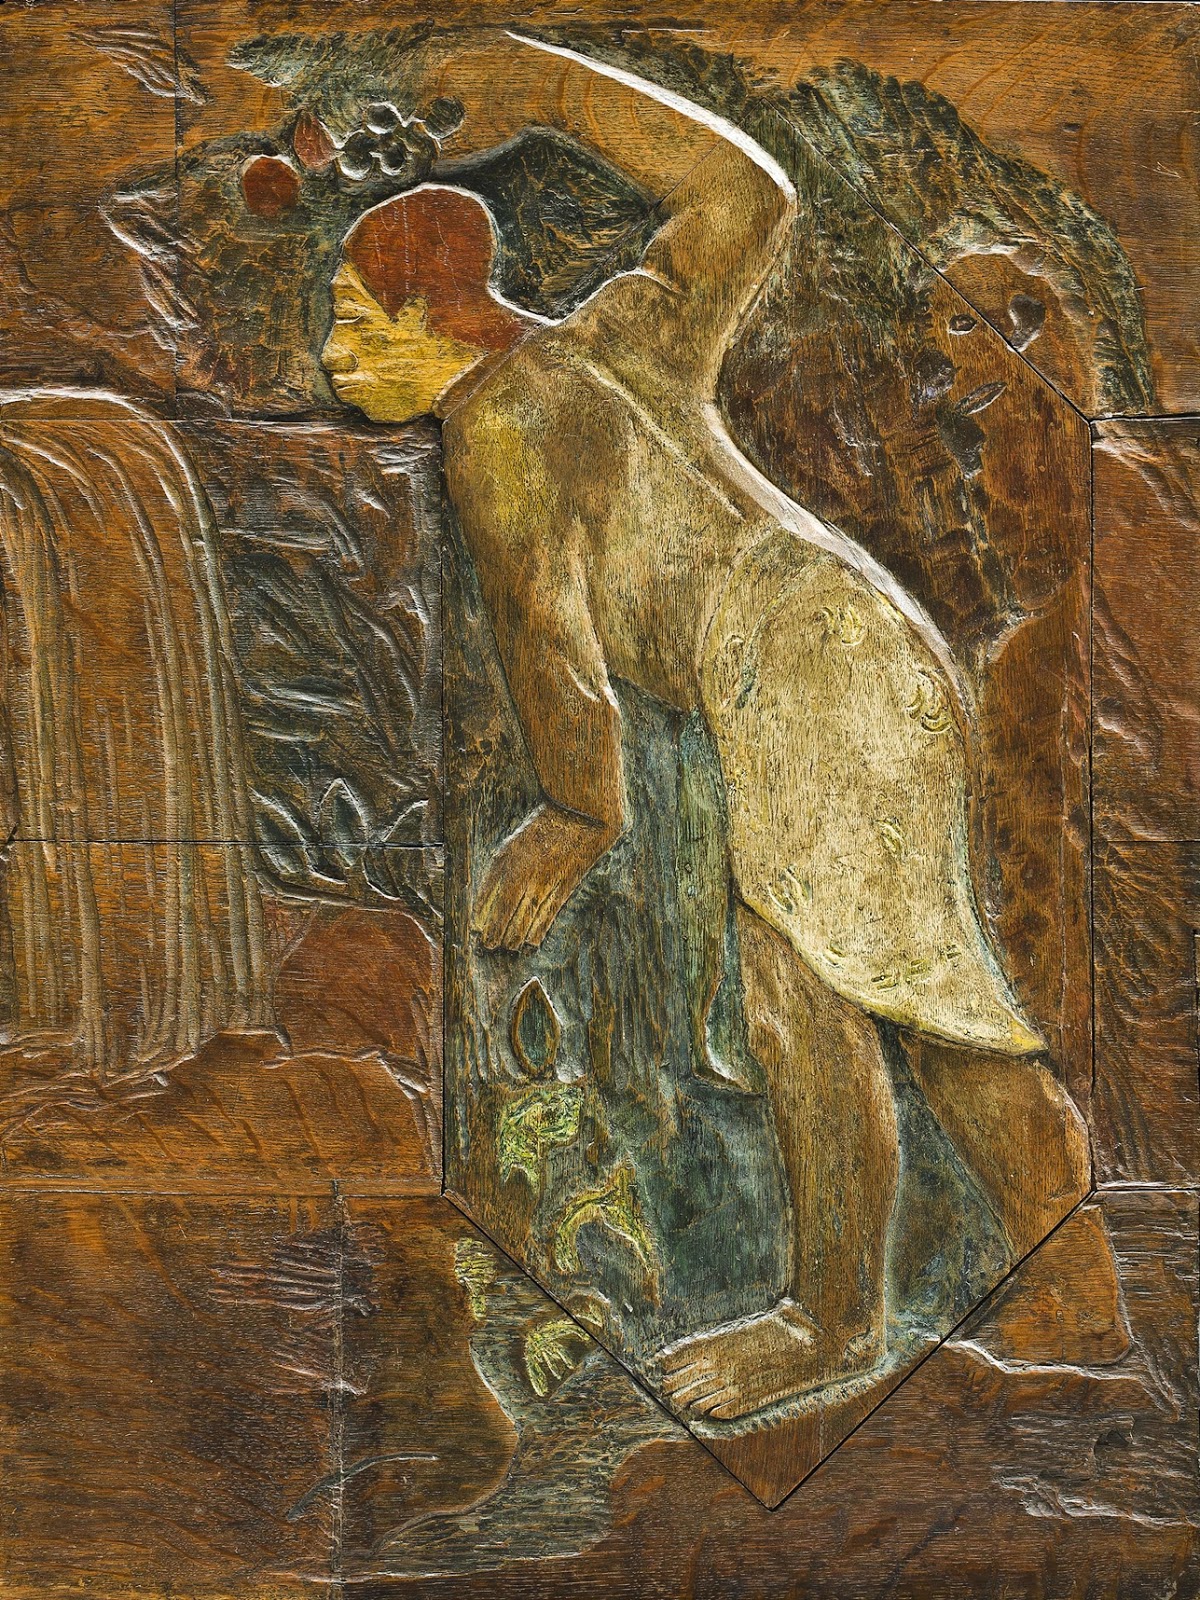 Paul+Gauguin-1848-1903 (235).jpg